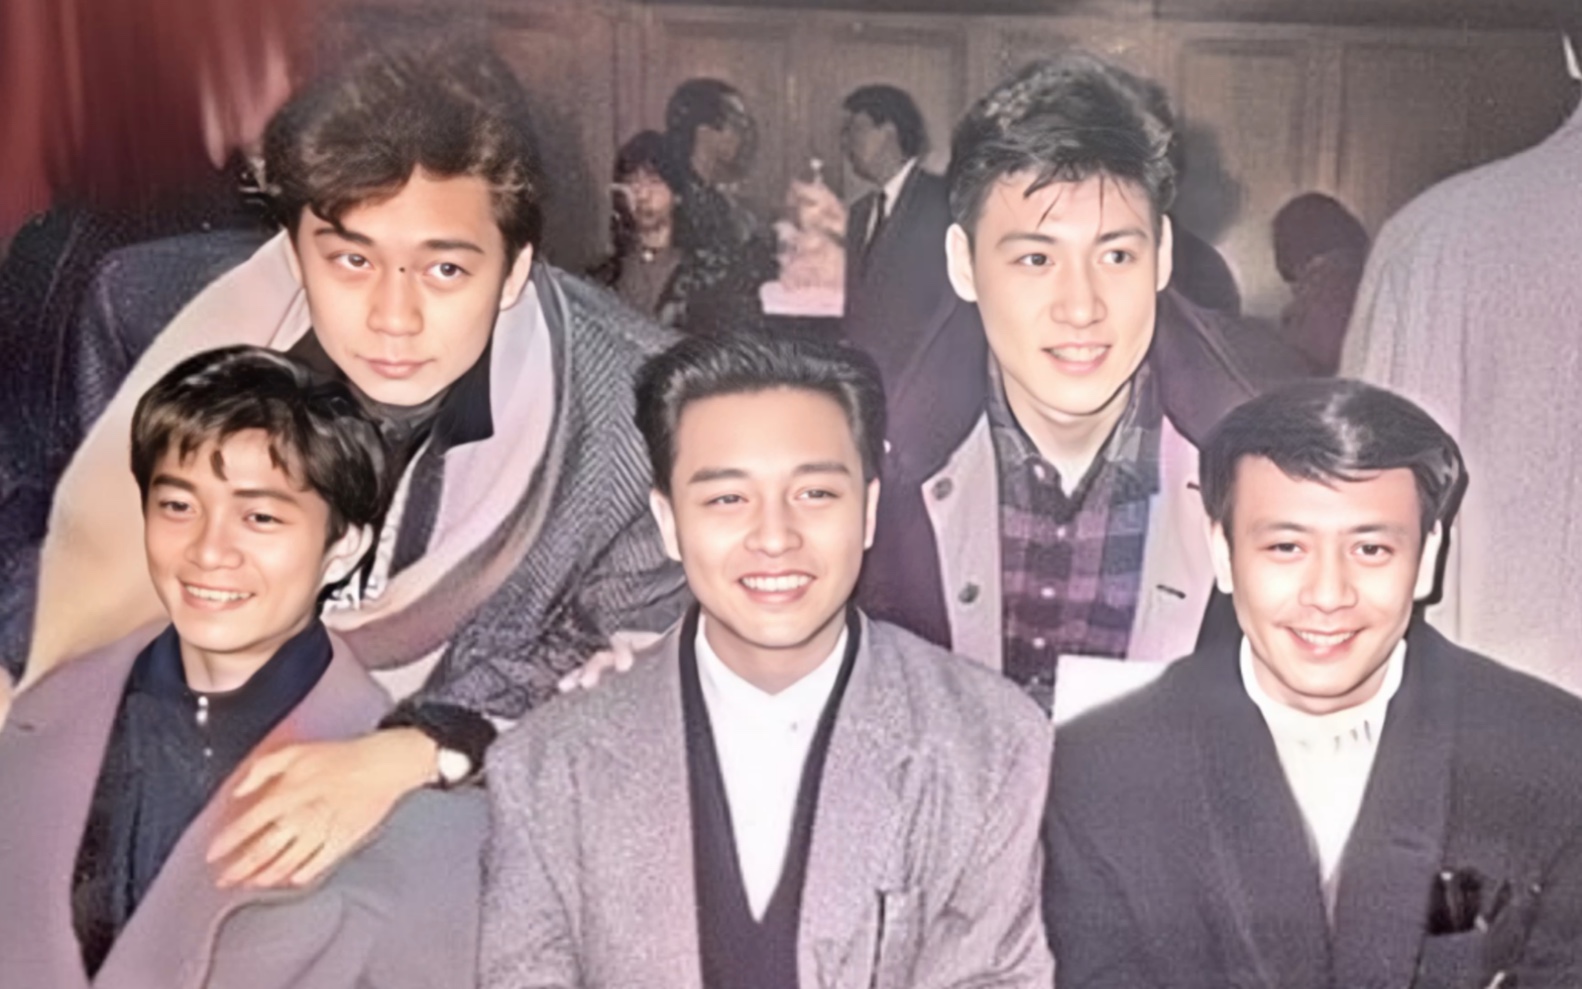 上世纪八十年代红极一时的香港男歌星们罕见合影,遗憾的是前排的三位